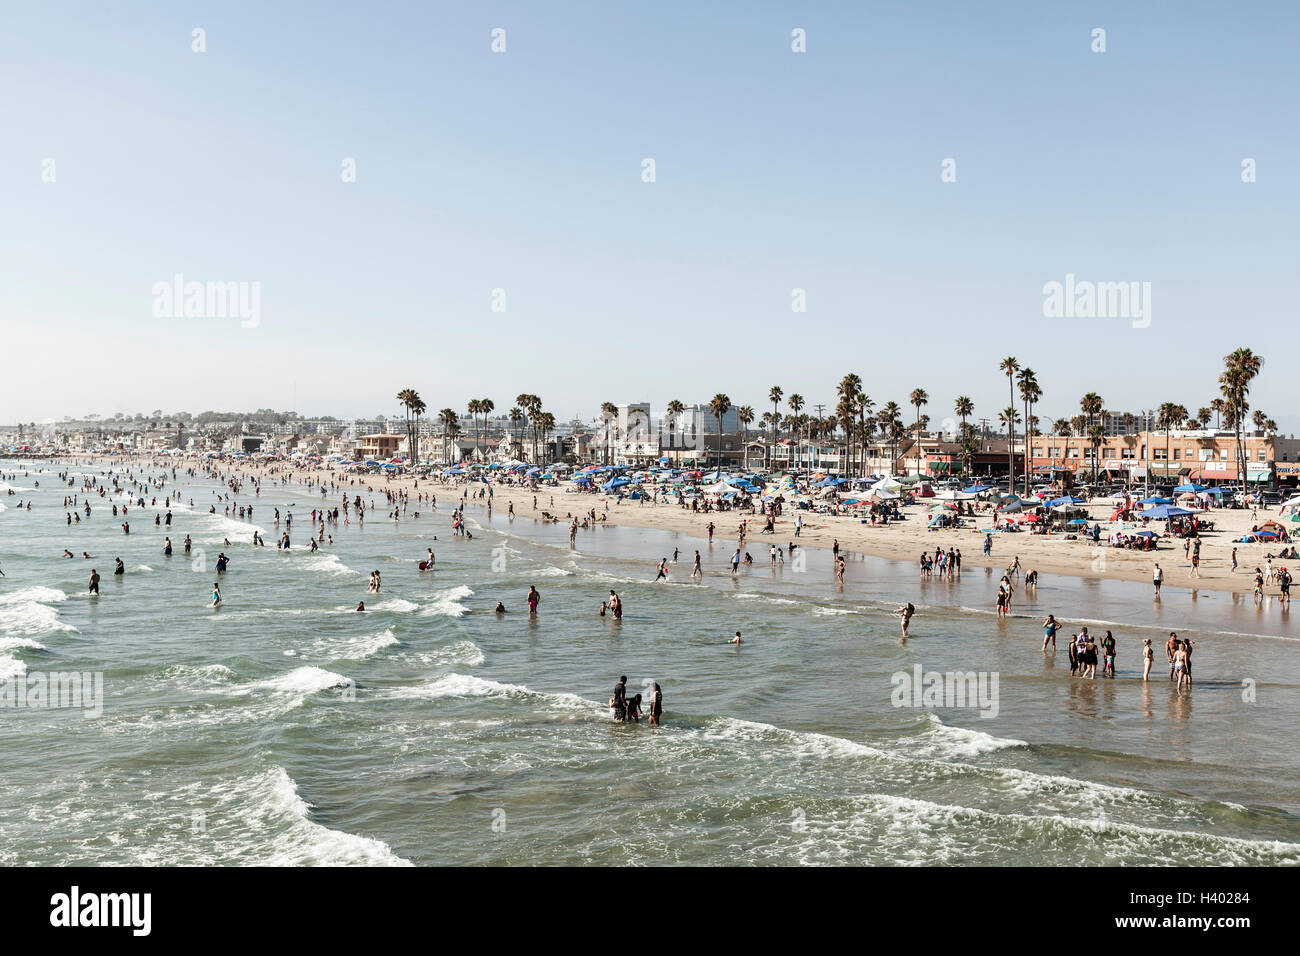 People on beach against clear sky, Newport Beach, California, USA Stock Photo